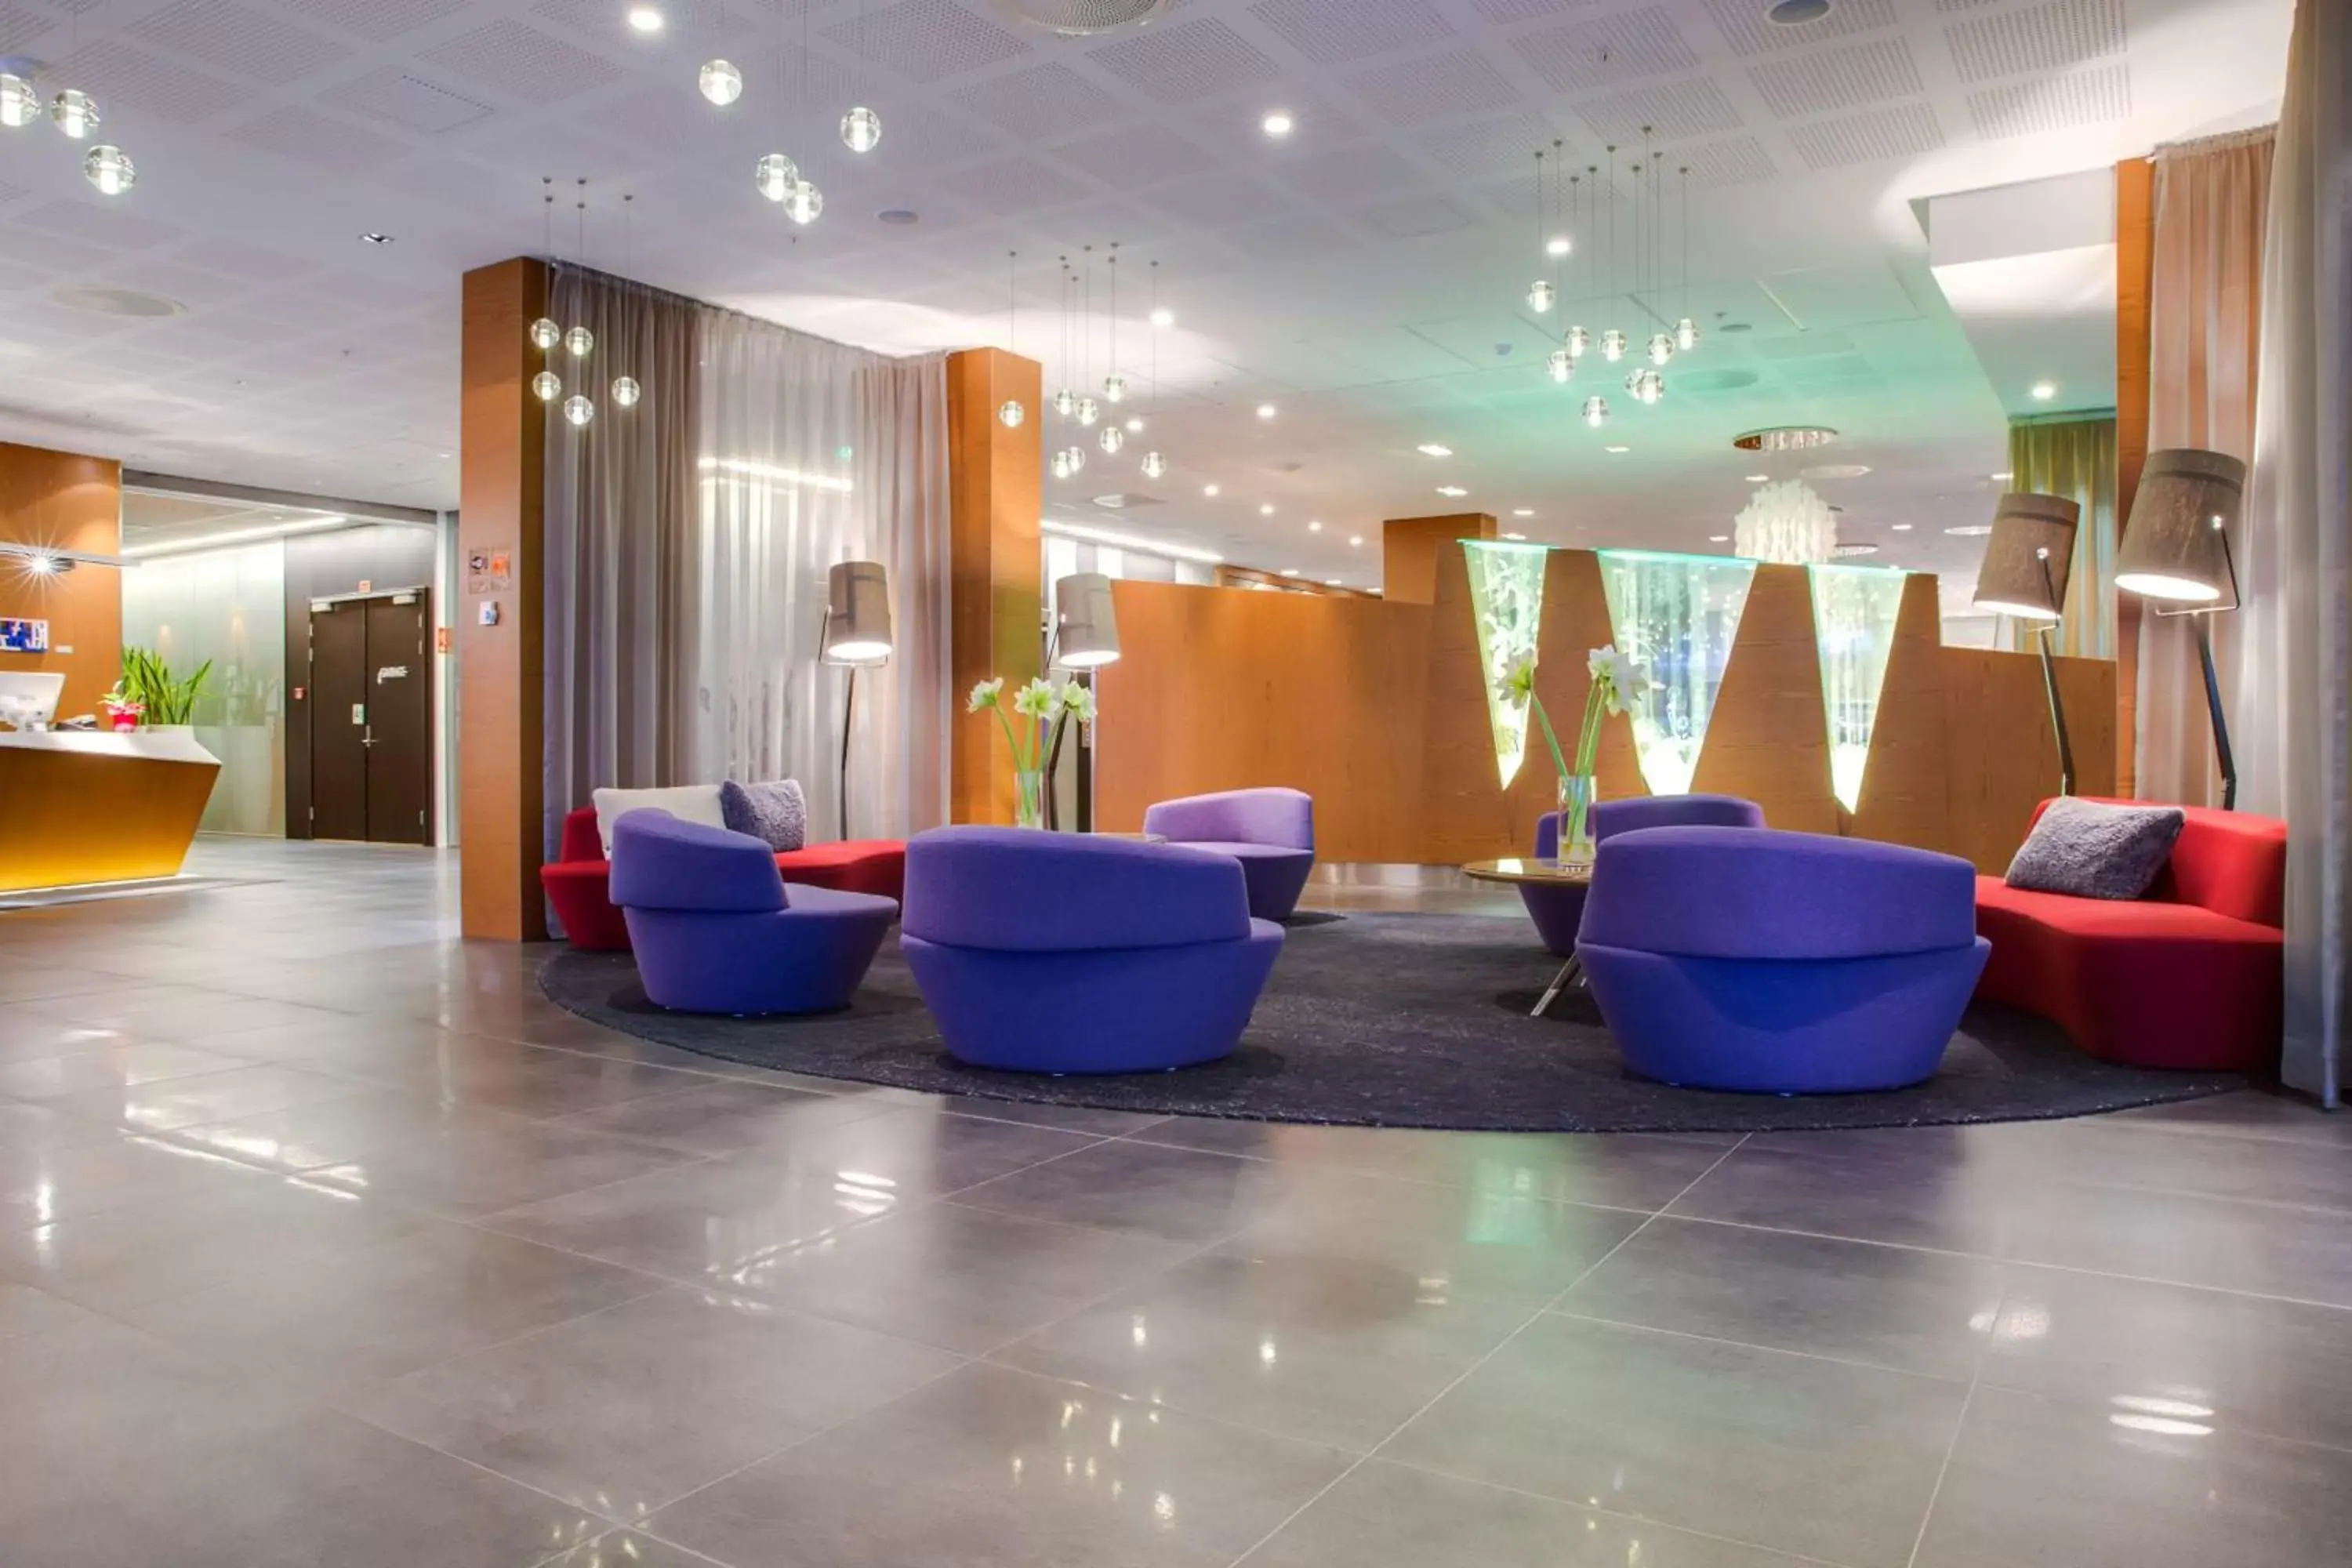 Lobby or reception, Lobby/Reception in Radisson Blu Royal Hotel, Bergen